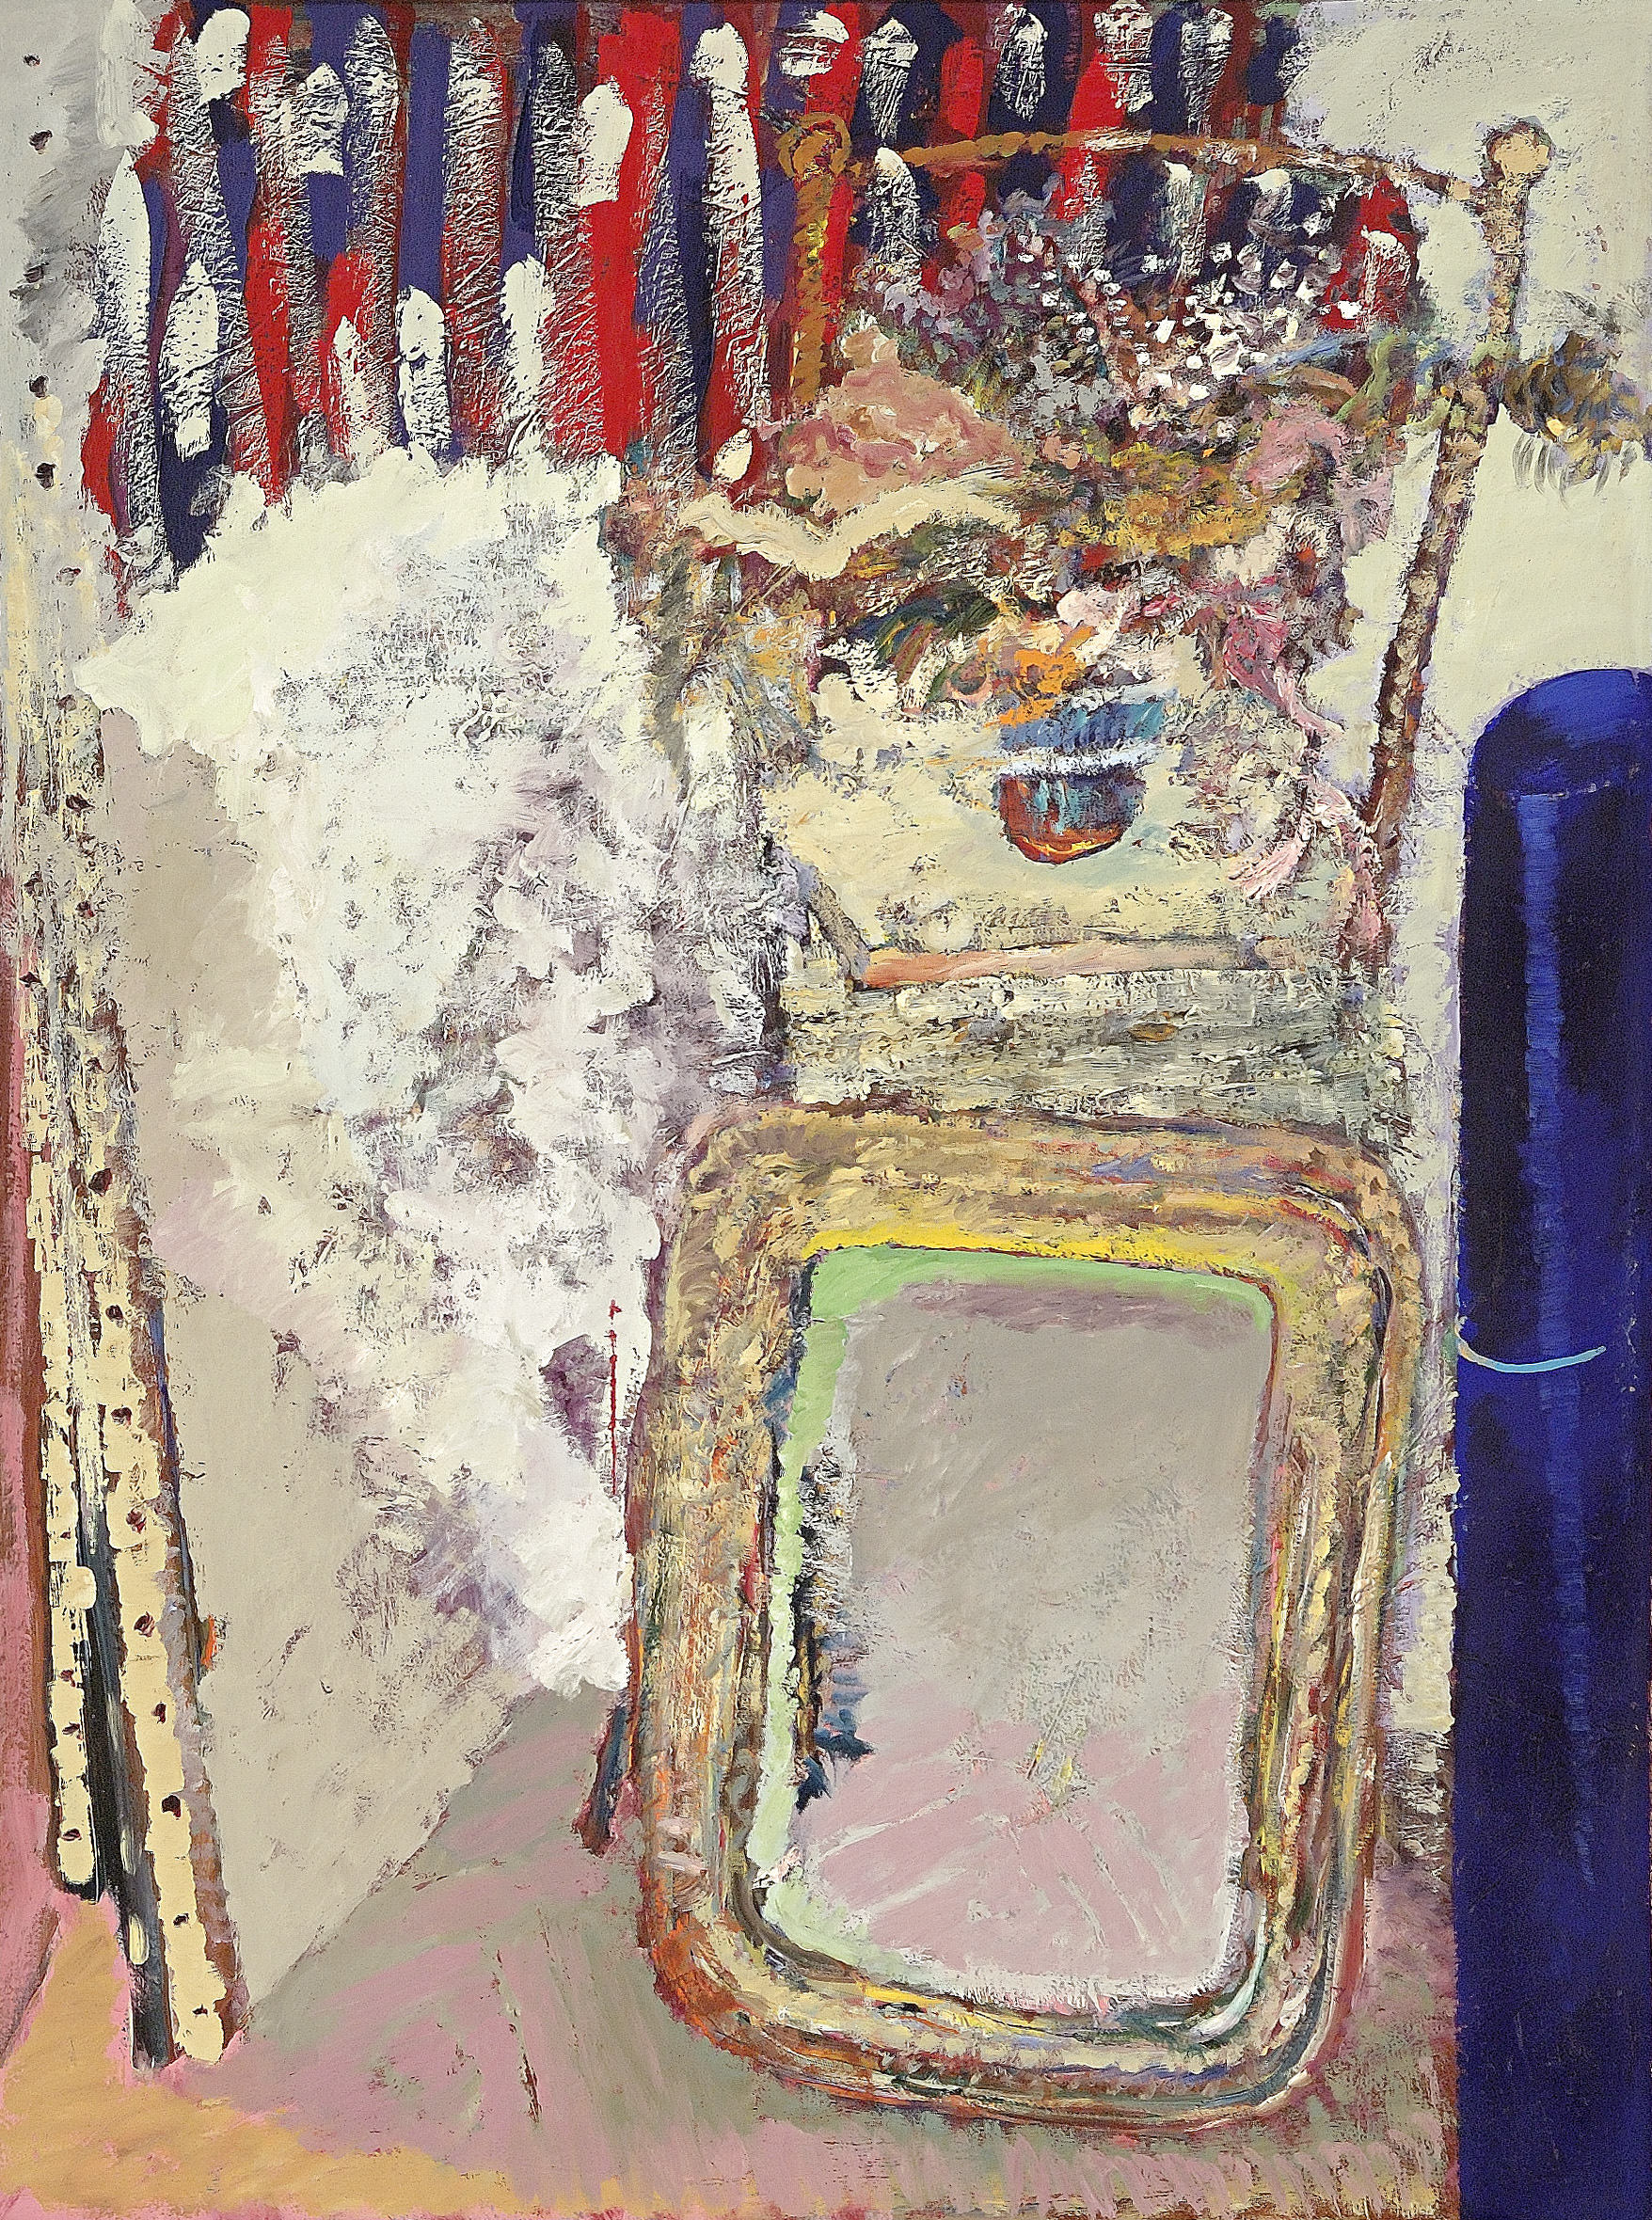 Ján Berger: Zátišie so zrkadlom / Still Life with Mirror. 1974 – 1985. Olej na plátne / oil on canvas, 100 × 75 cm. Slovenská národná galéria, Bratislava